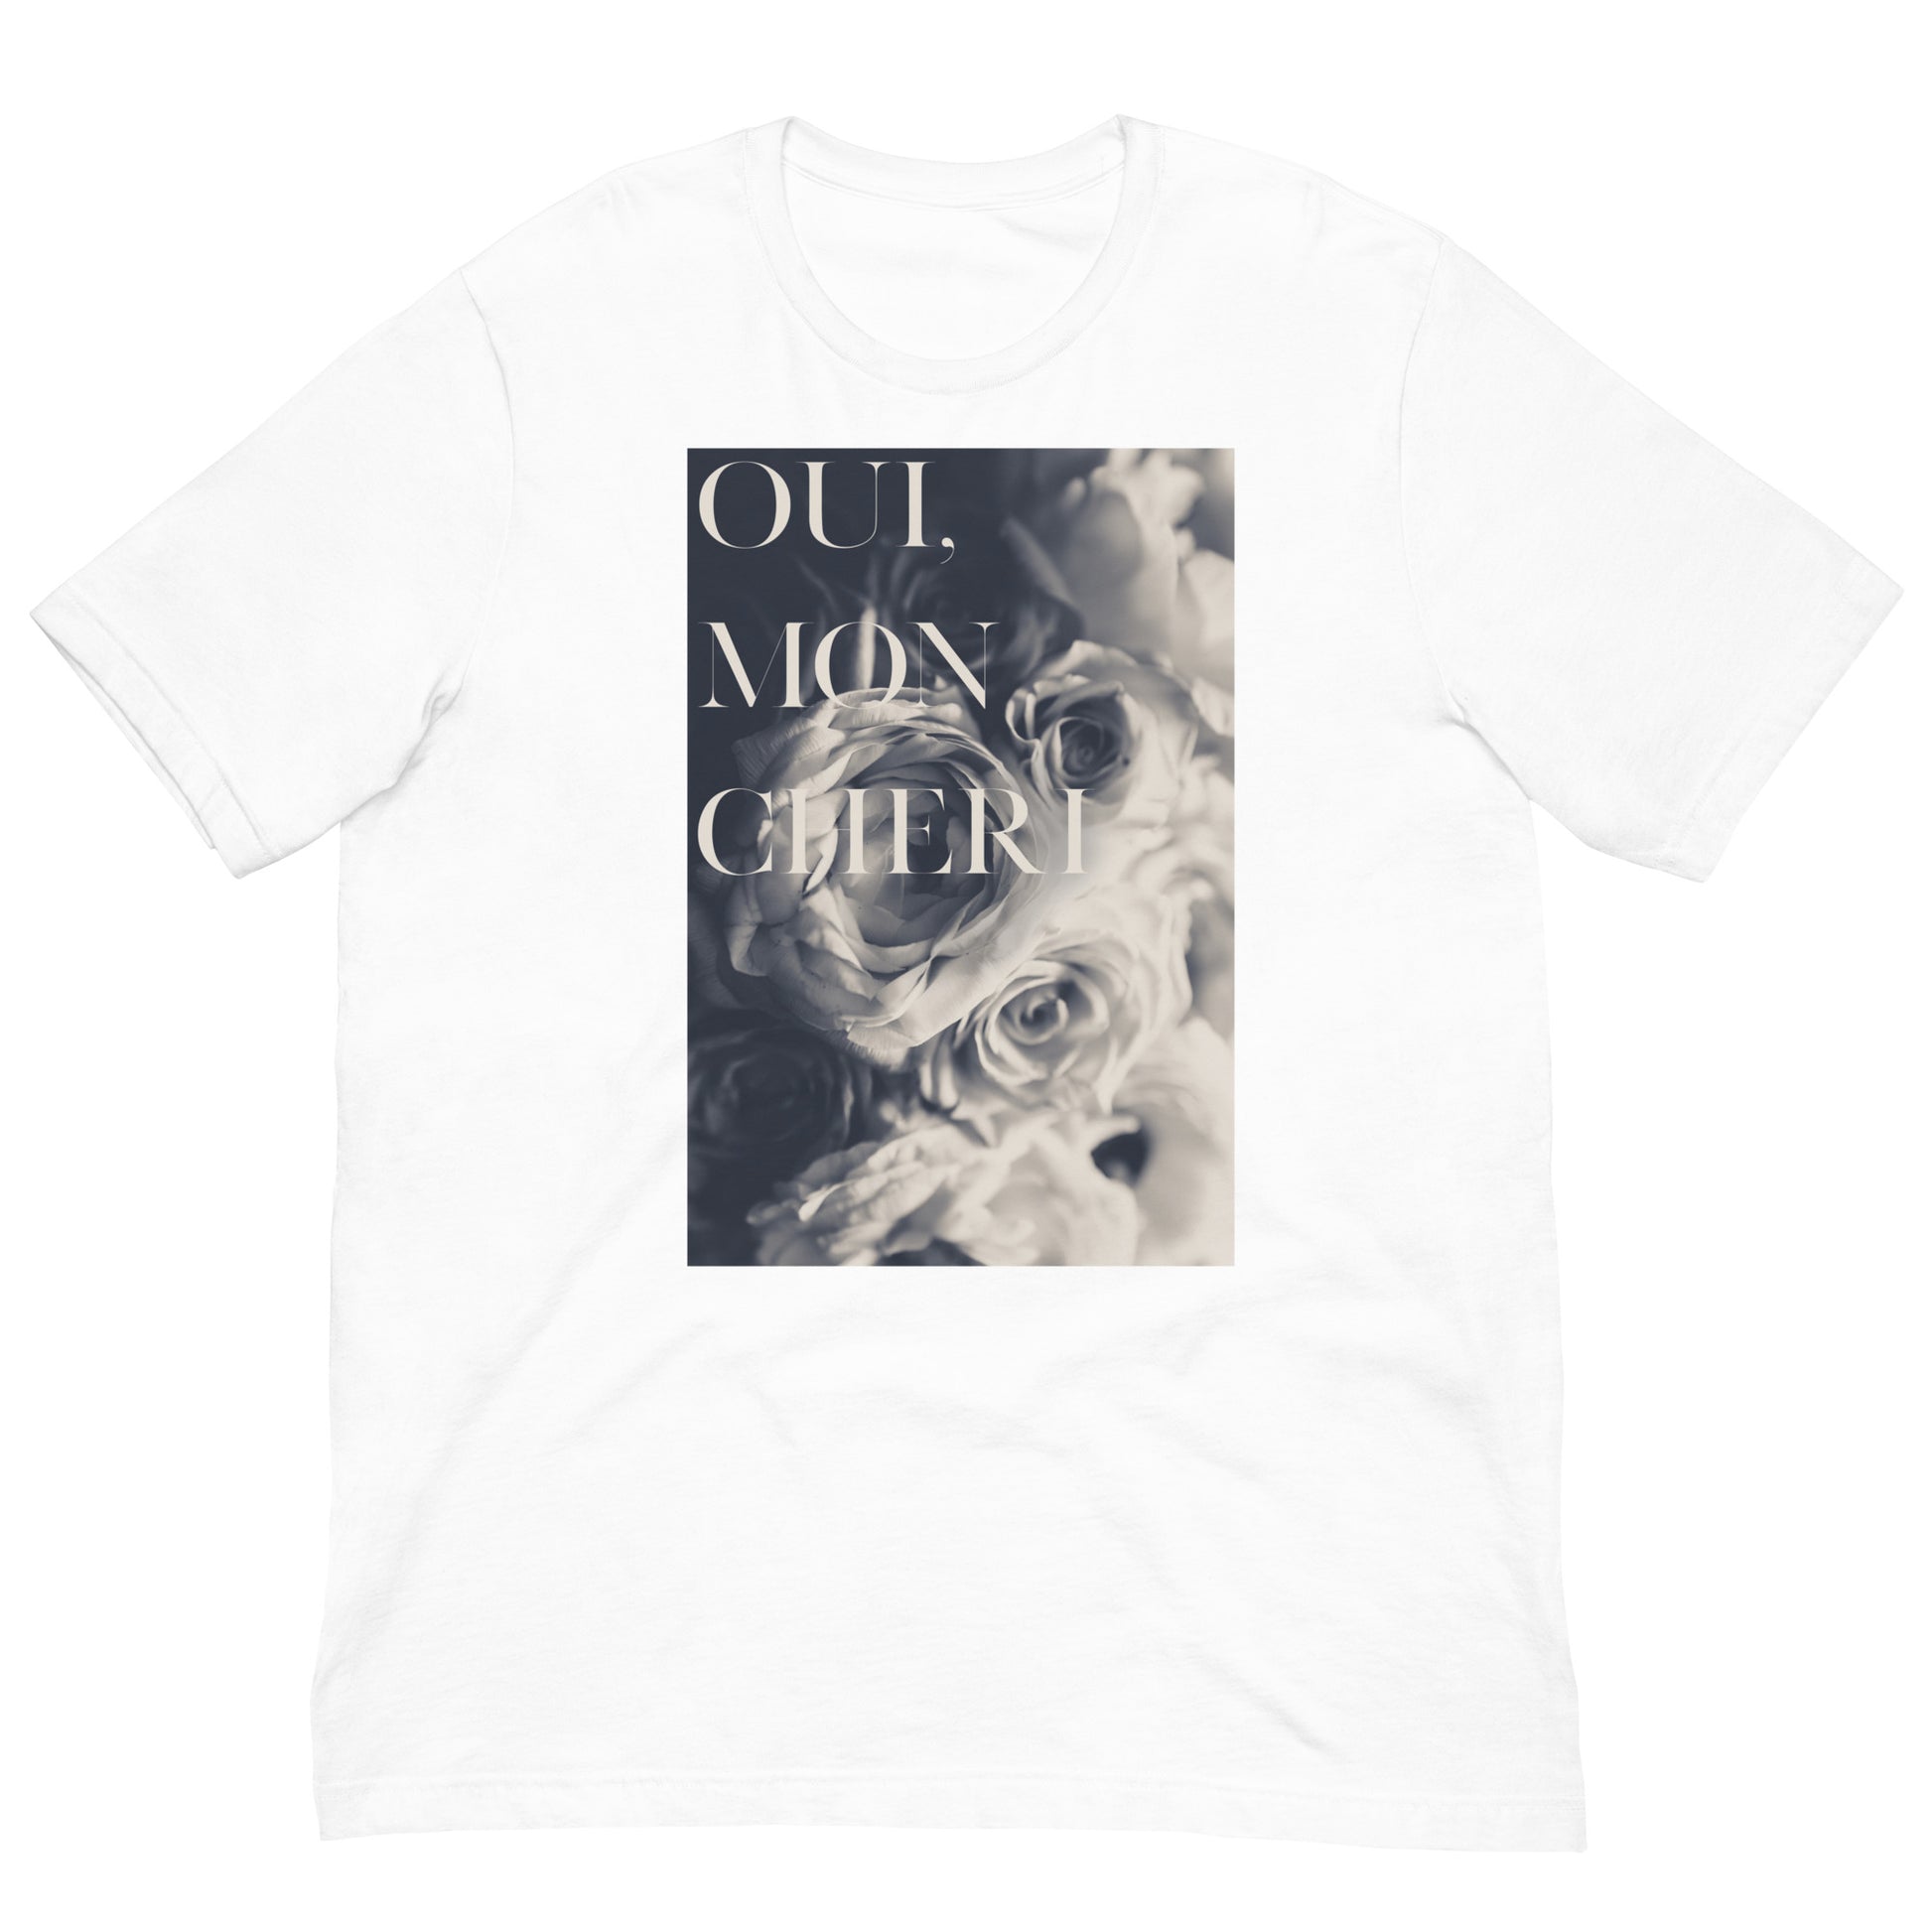 Flad Udløbet New Zealand Oui Mon Cheri Unisex t-shirt – The BI Boutique